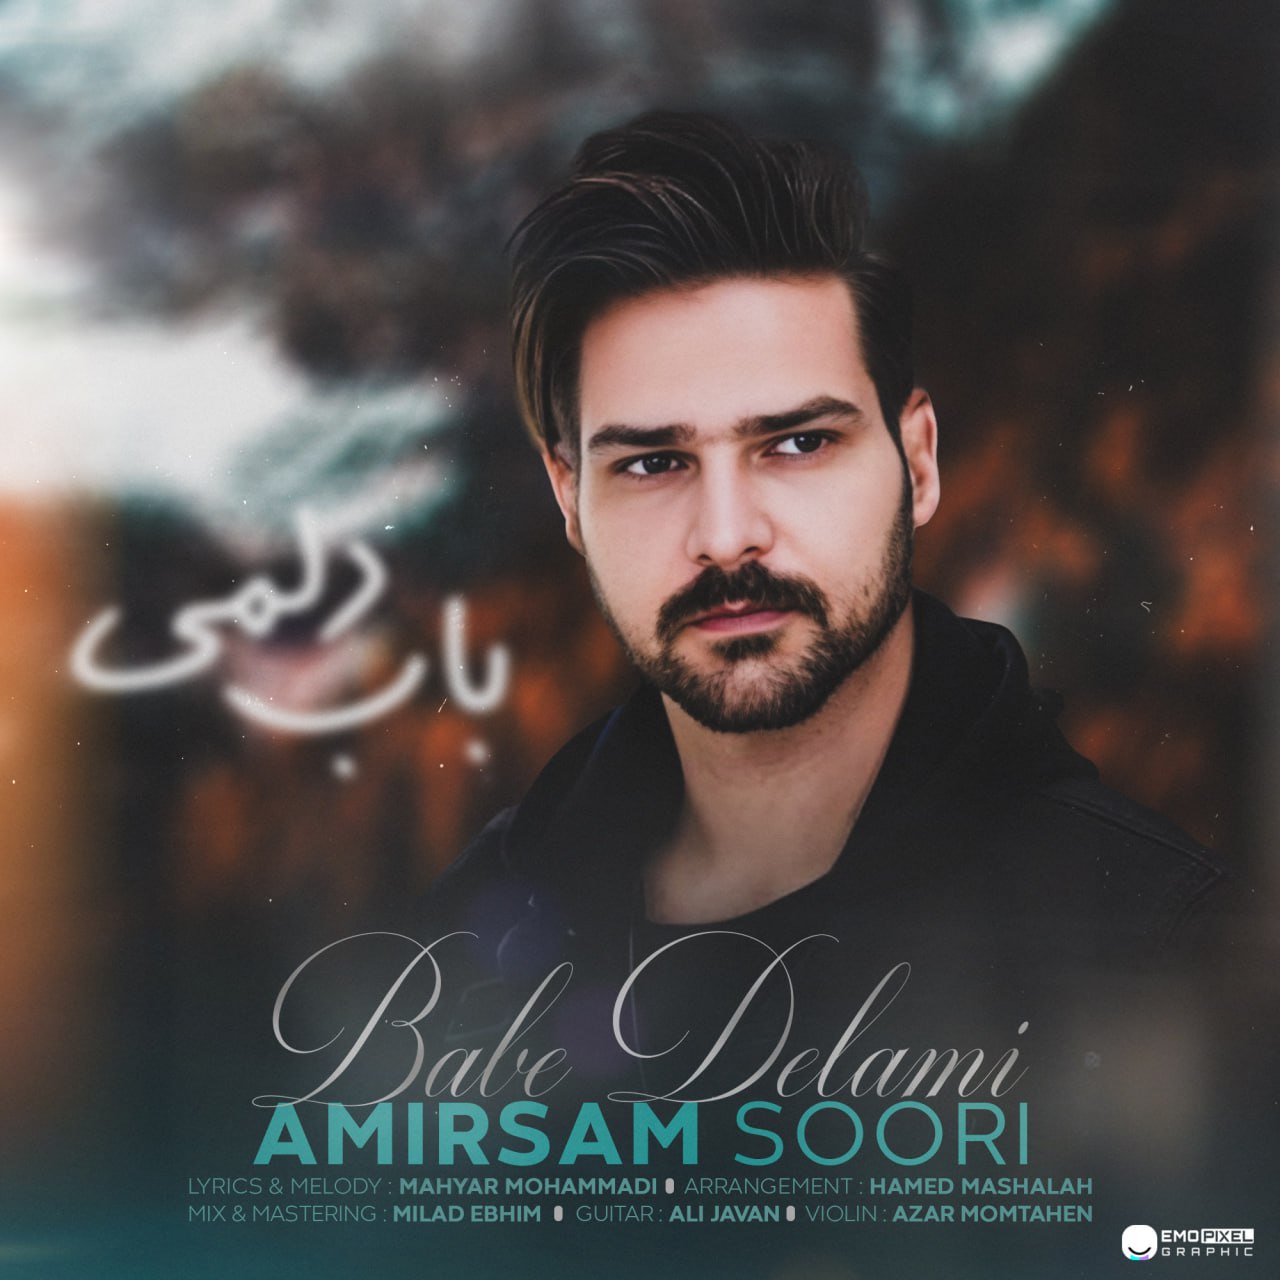 Amir Sam Soori – Babe Delami